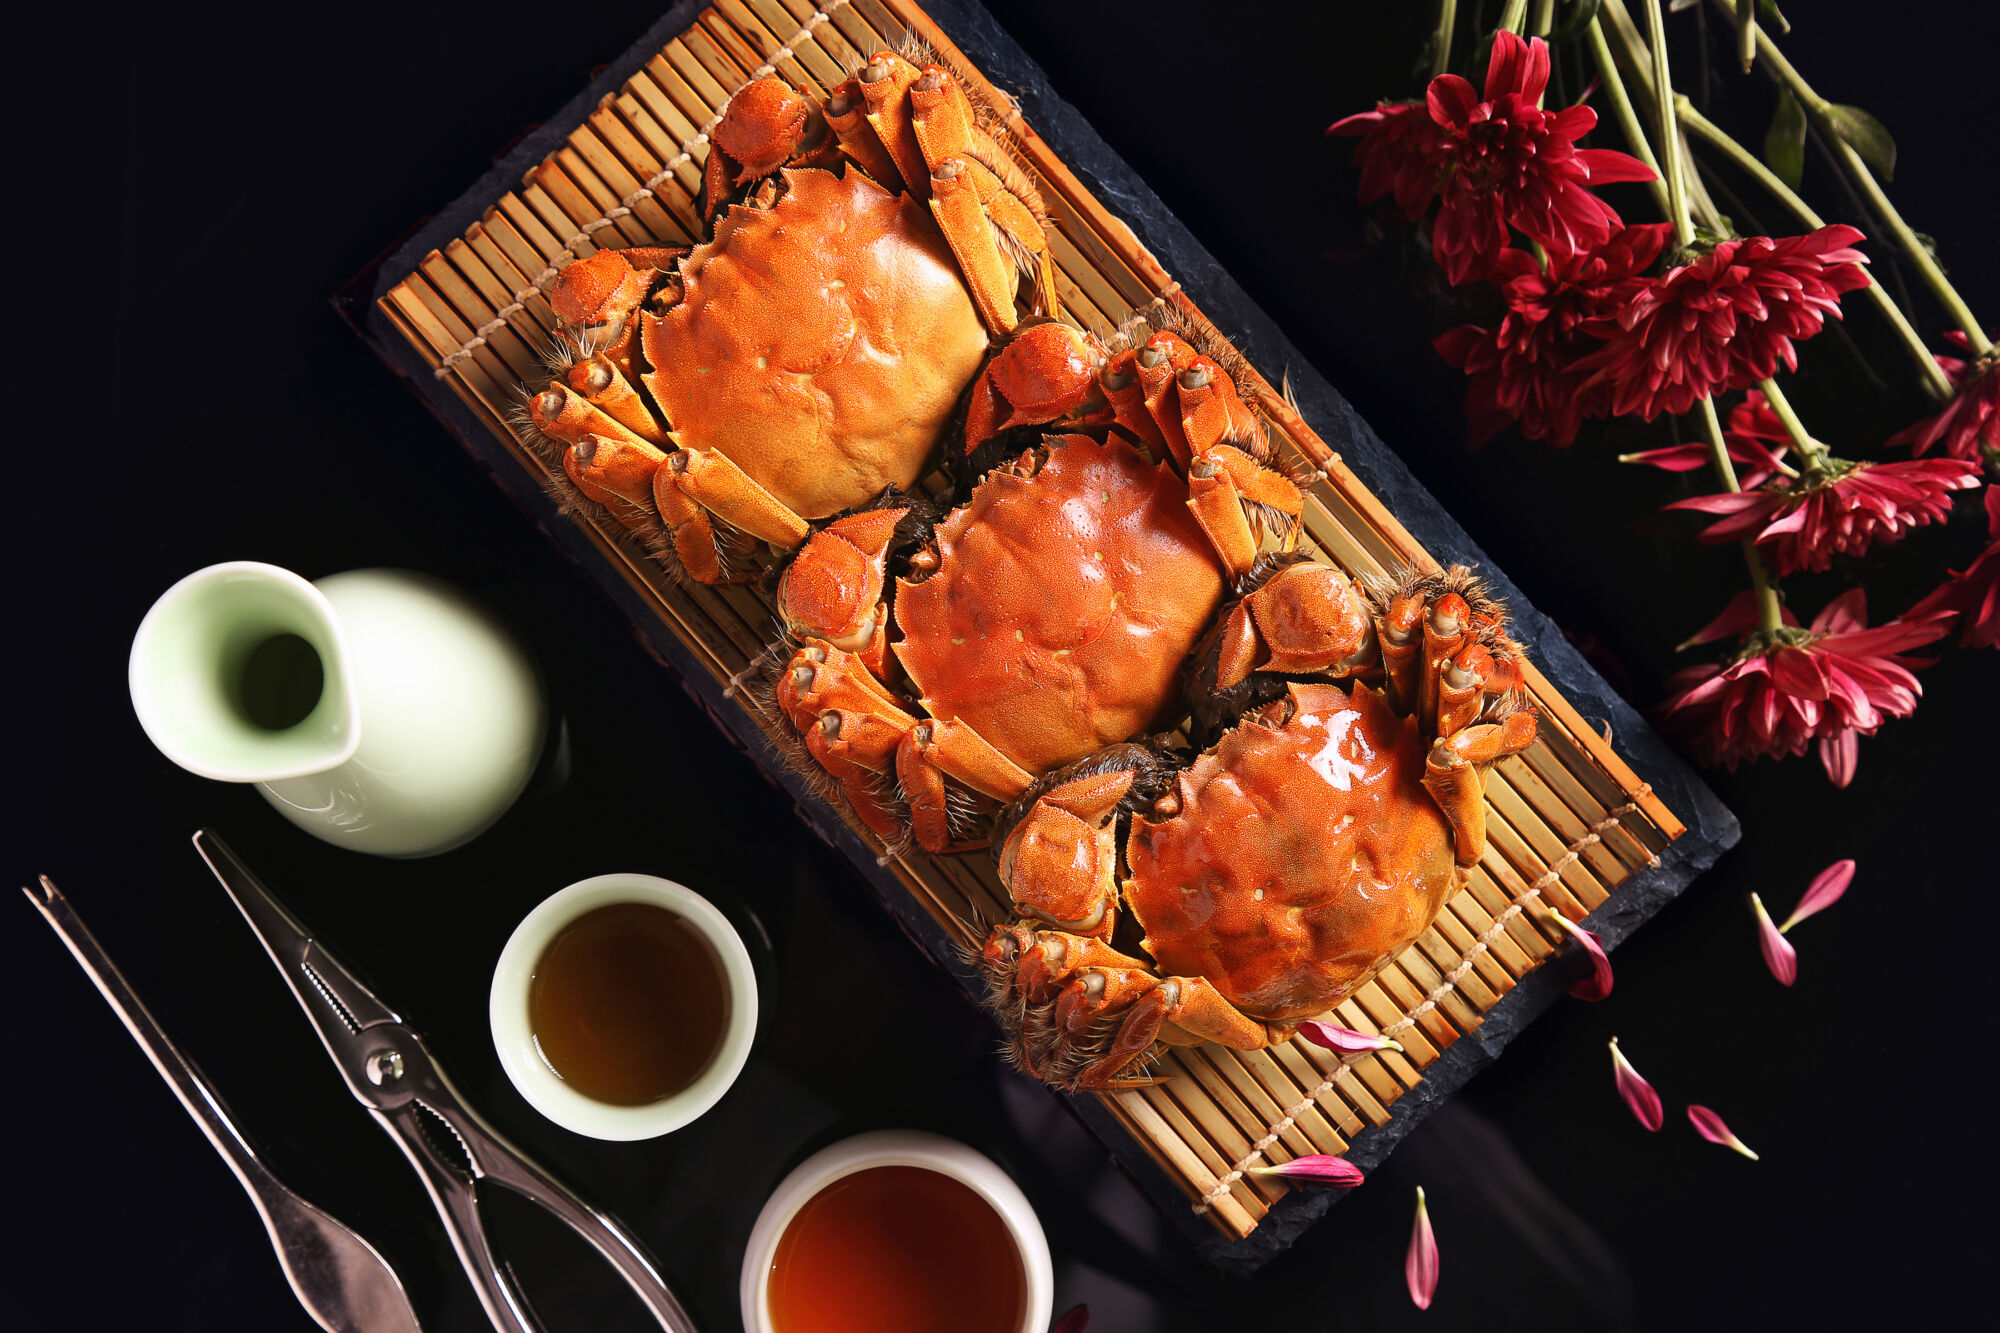 Hairy crab from Grand Hyatt Macau Beijing Kitchen